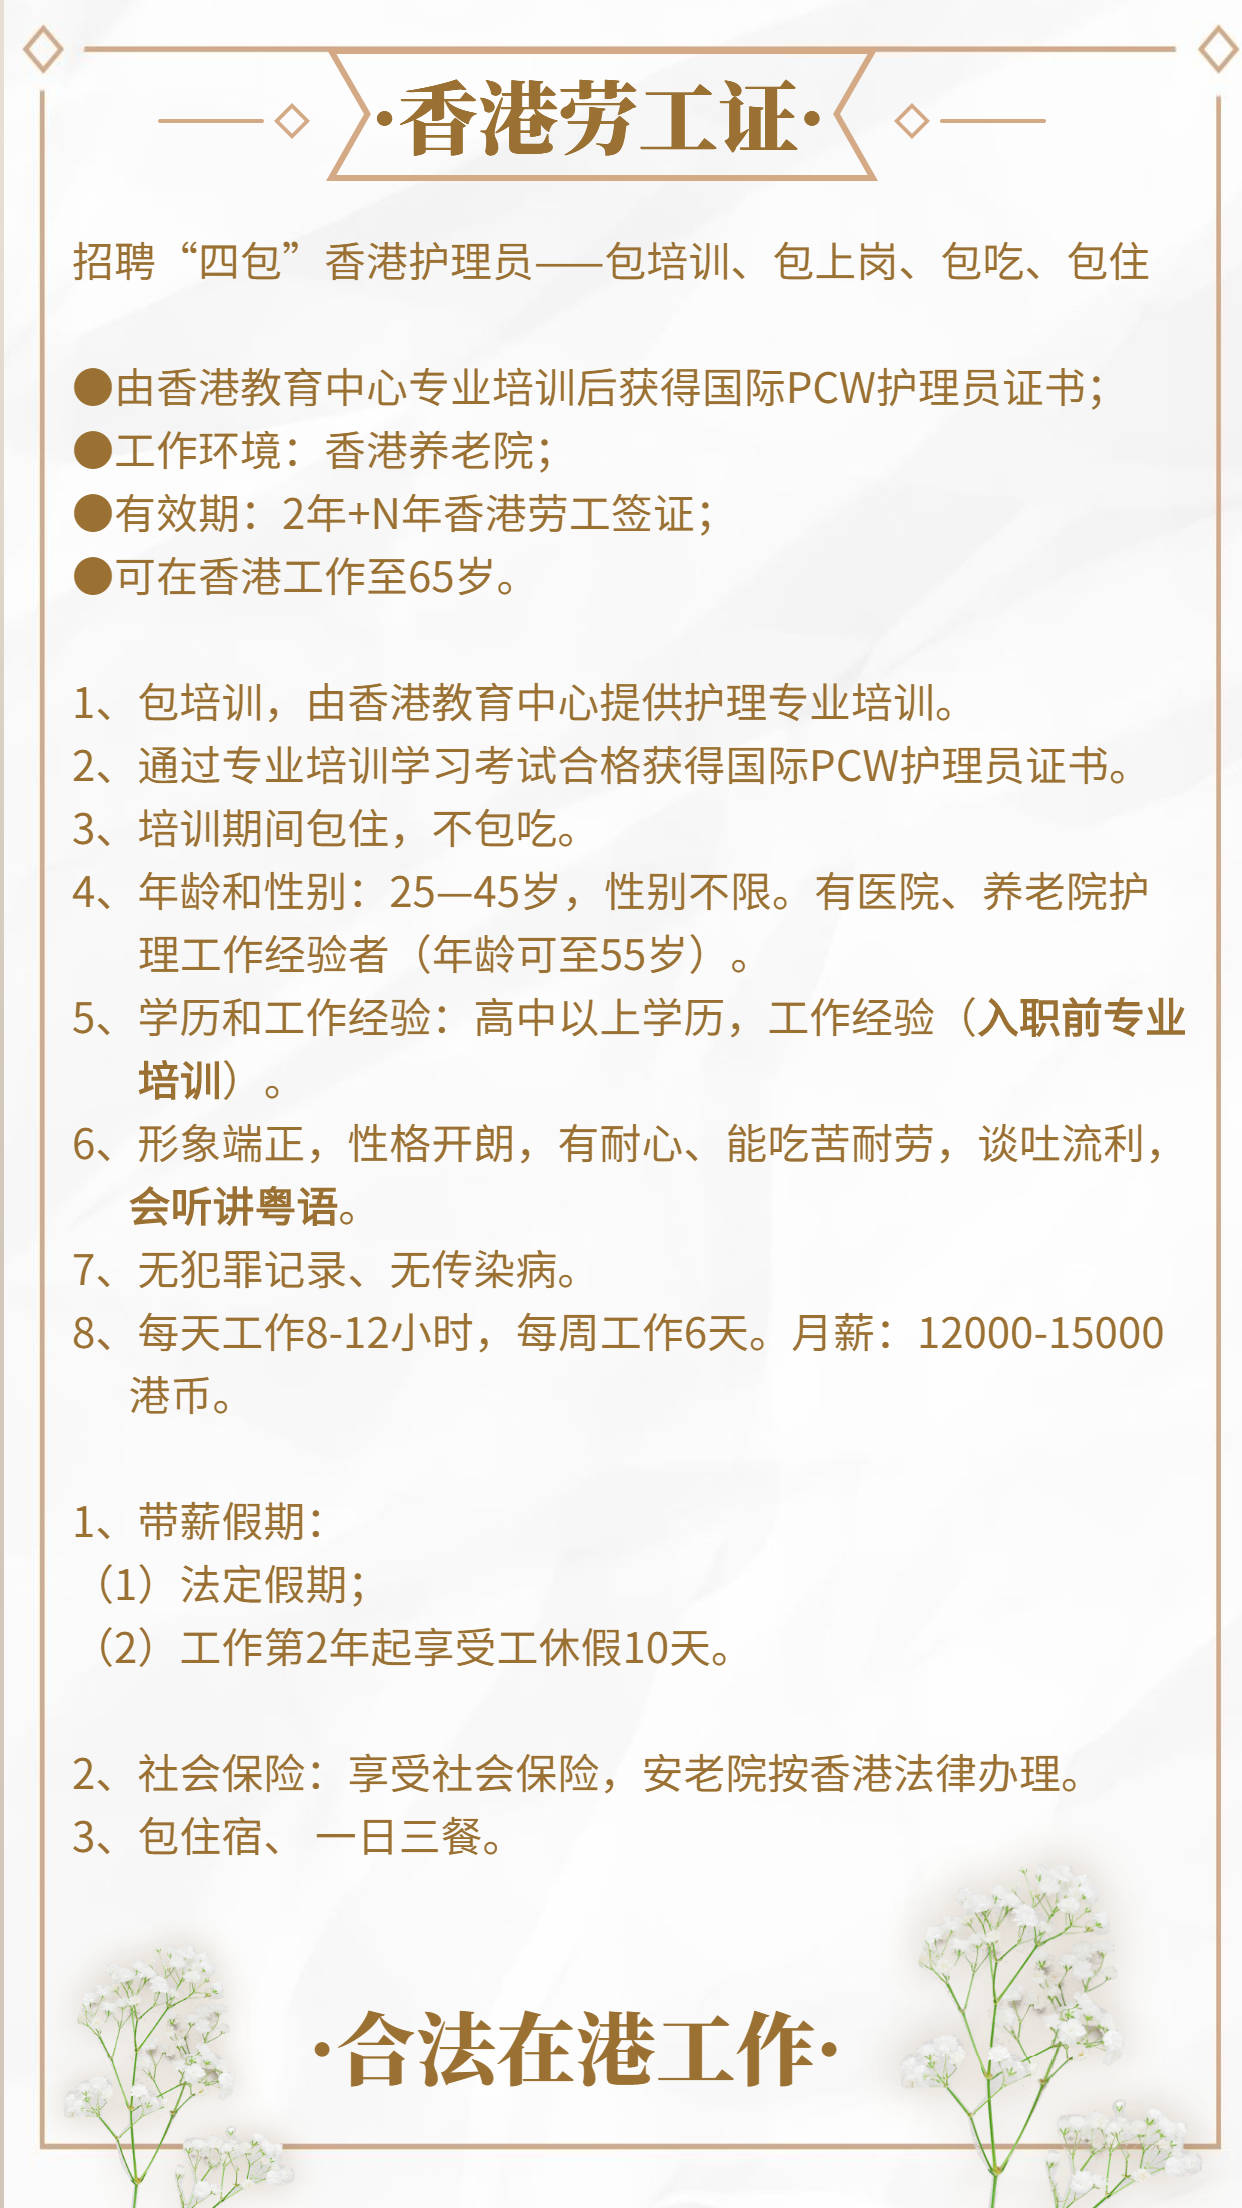 香港劳工证申请需要哪些条件?